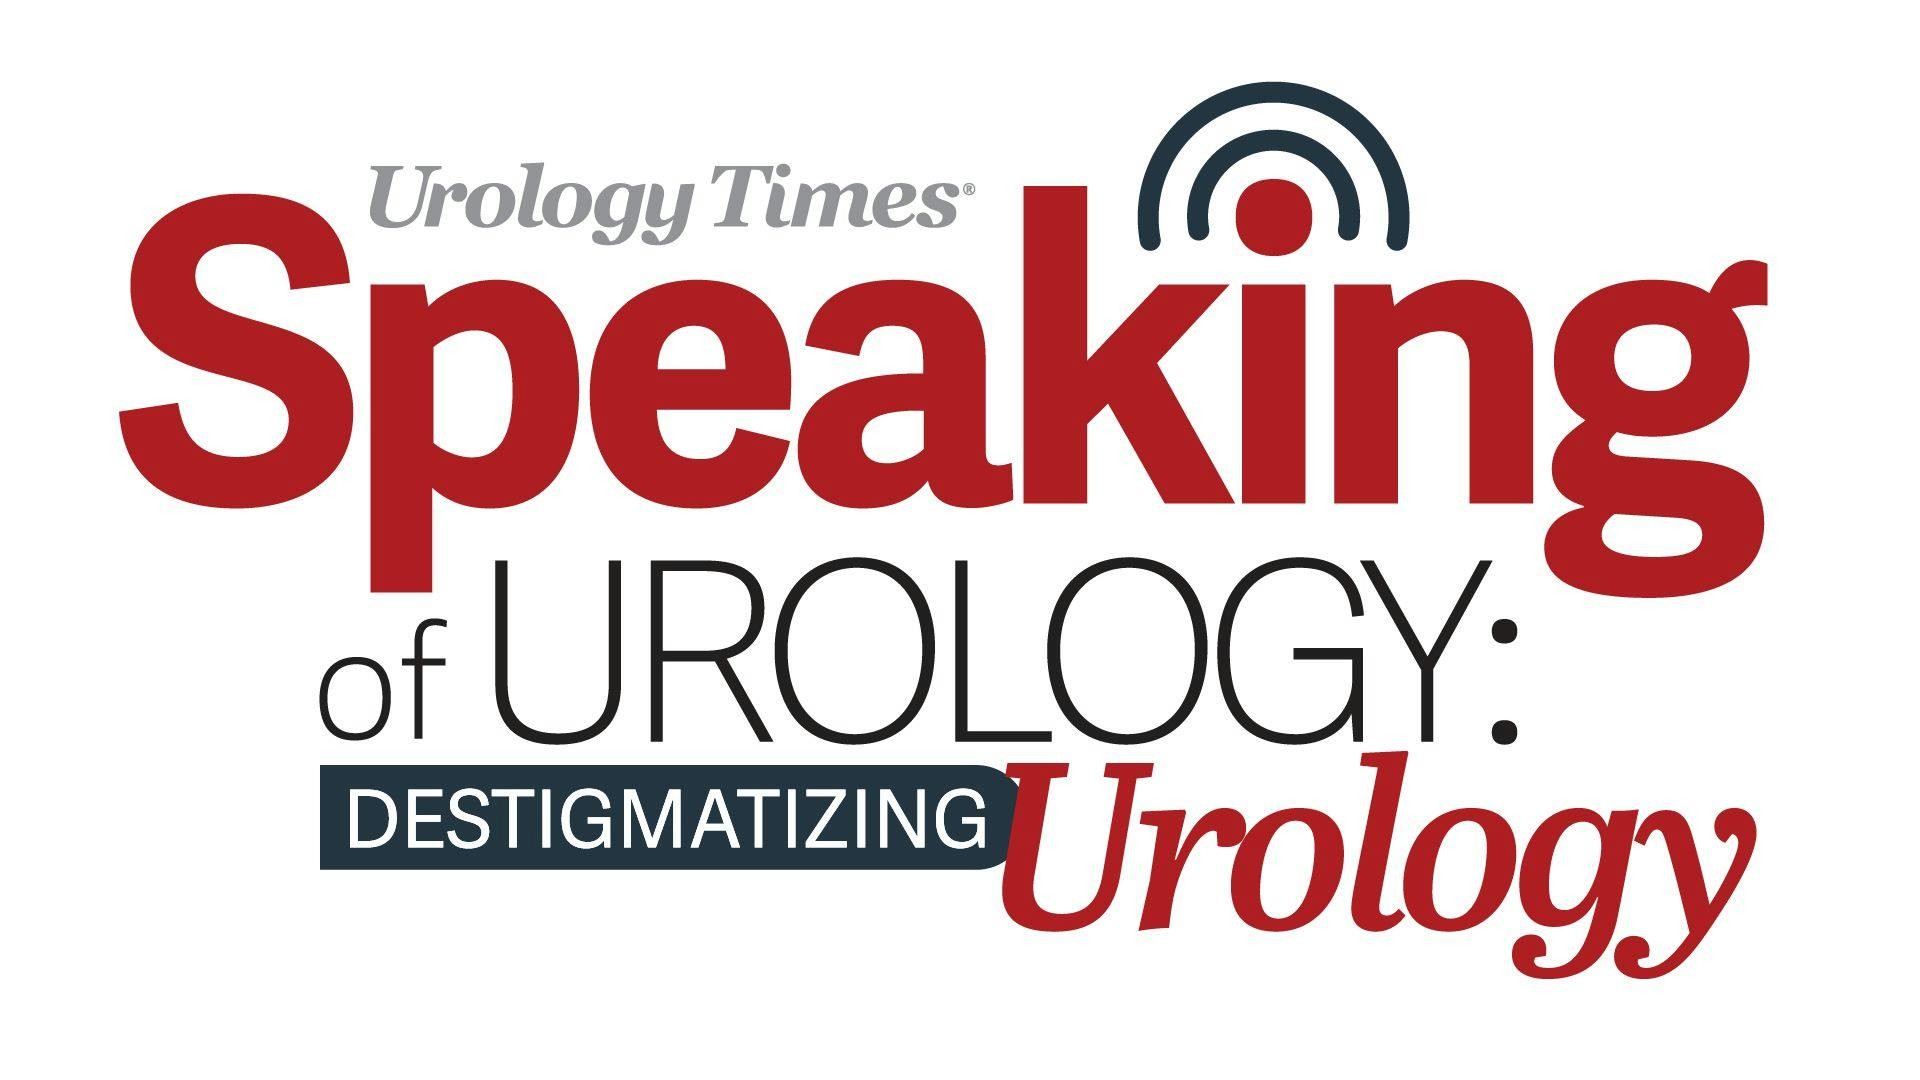 Destigmatizing Urology: Dr. Burnett discusses sexual dysfunction in men